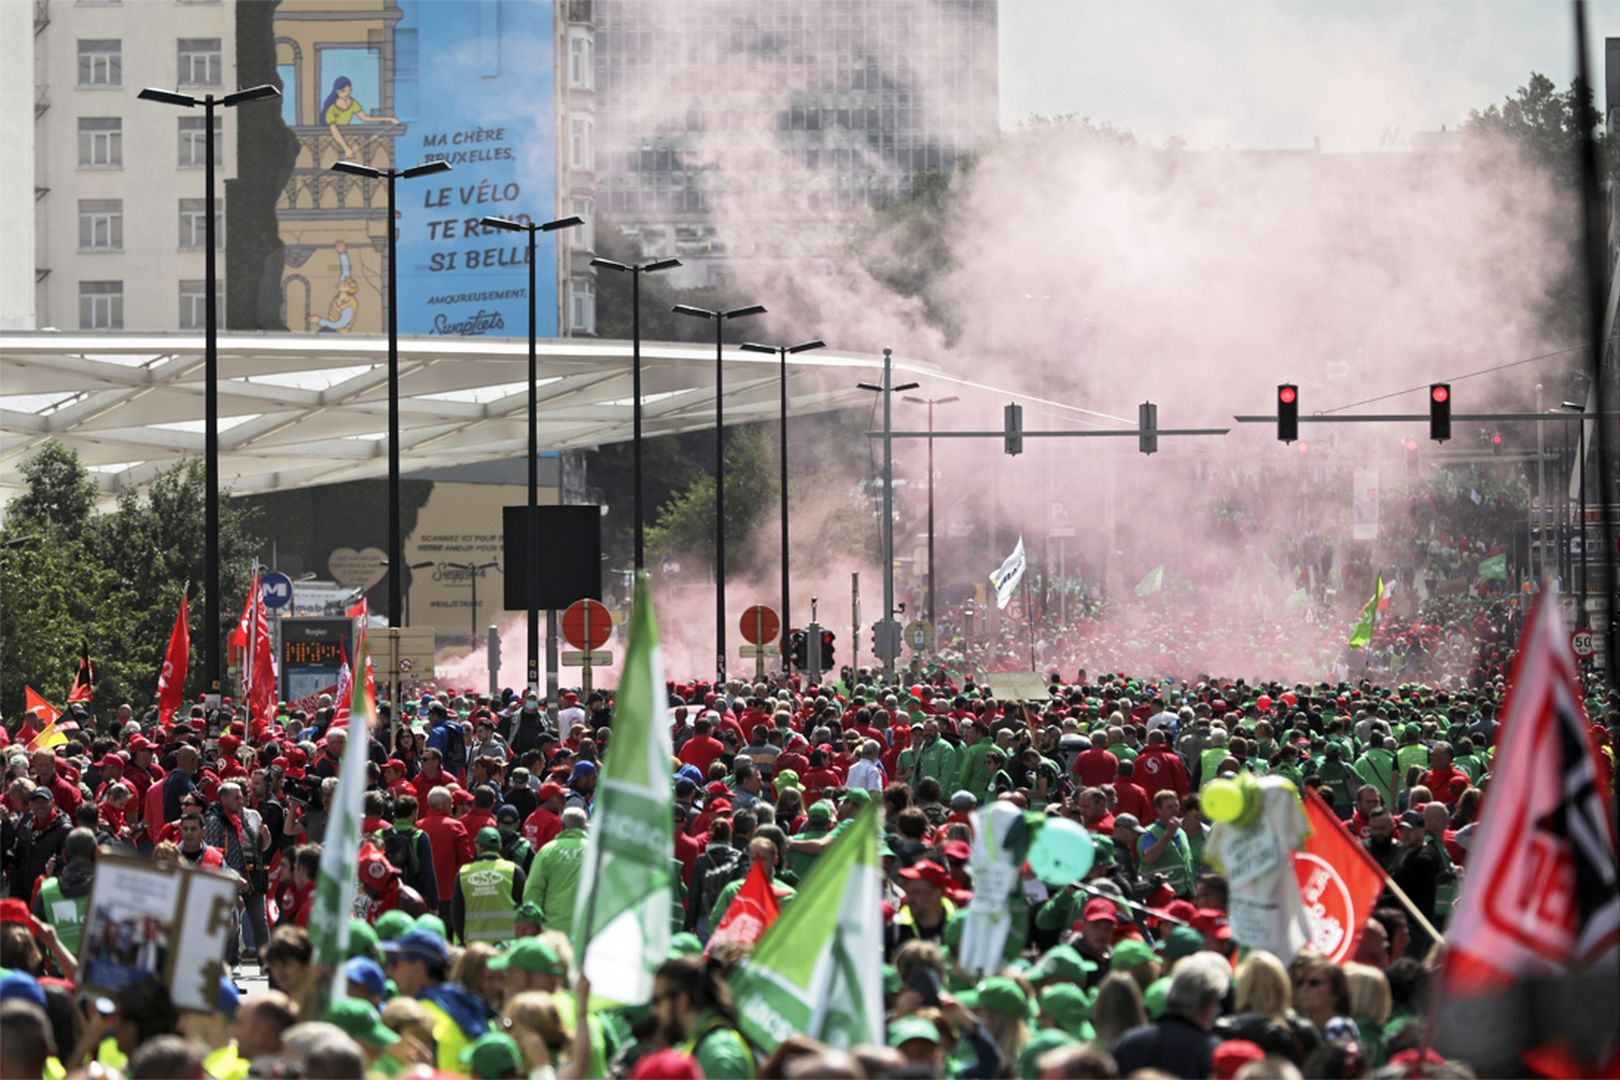 La manifestation pour le pouvoir d'achat avait rassemblé entre 70.000 et 80.000 personnes dans les rues de Bruxelles